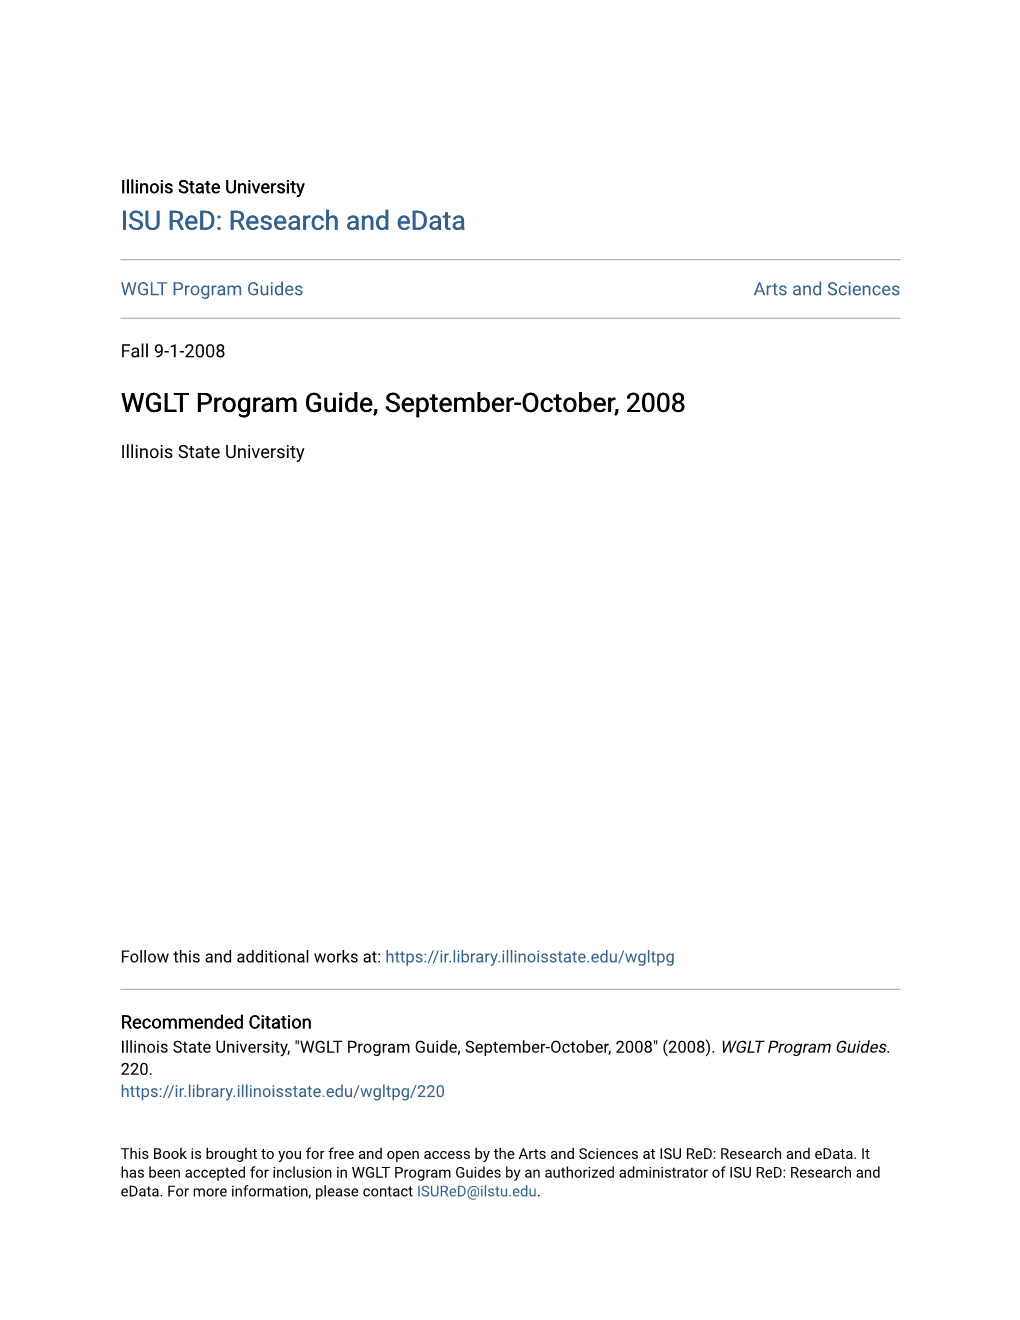 WGLT Program Guide, September-October, 2008